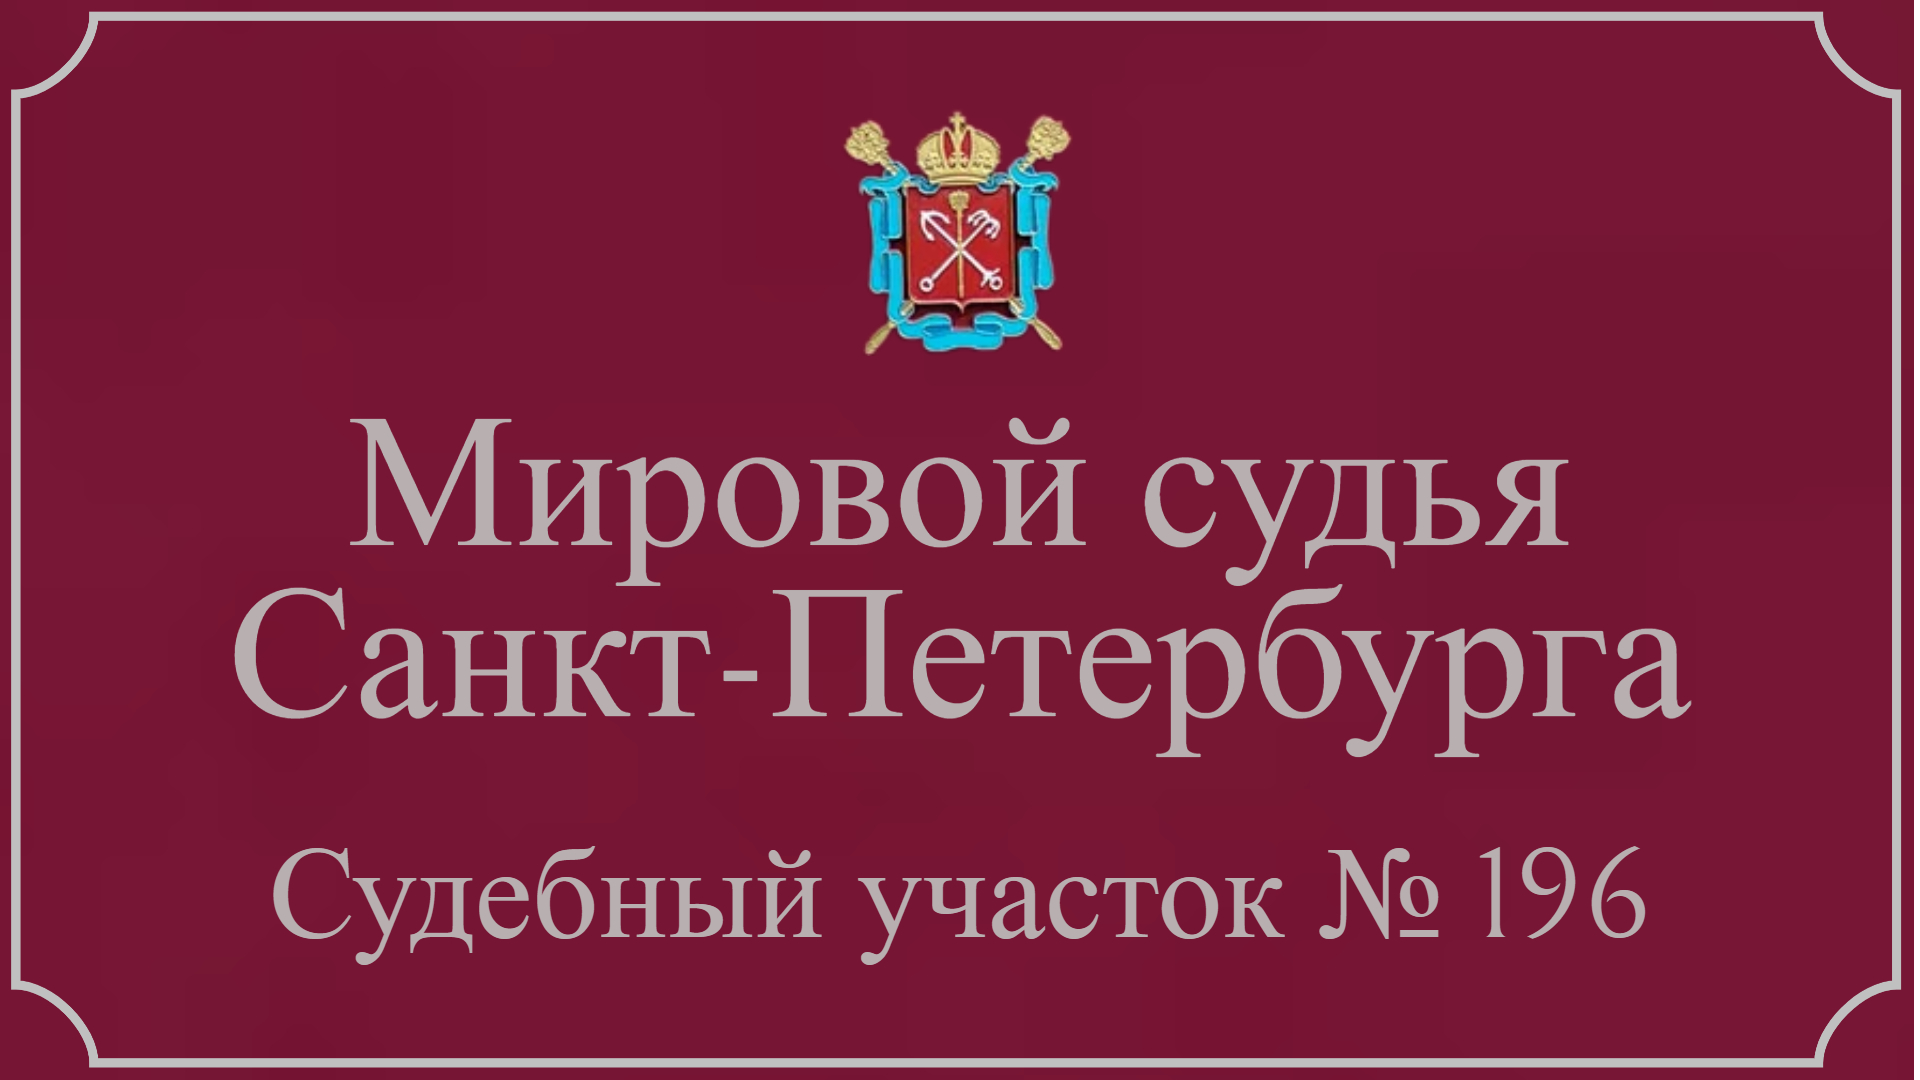 Информация по 196 судебному участку в Санкт-Петербурге.